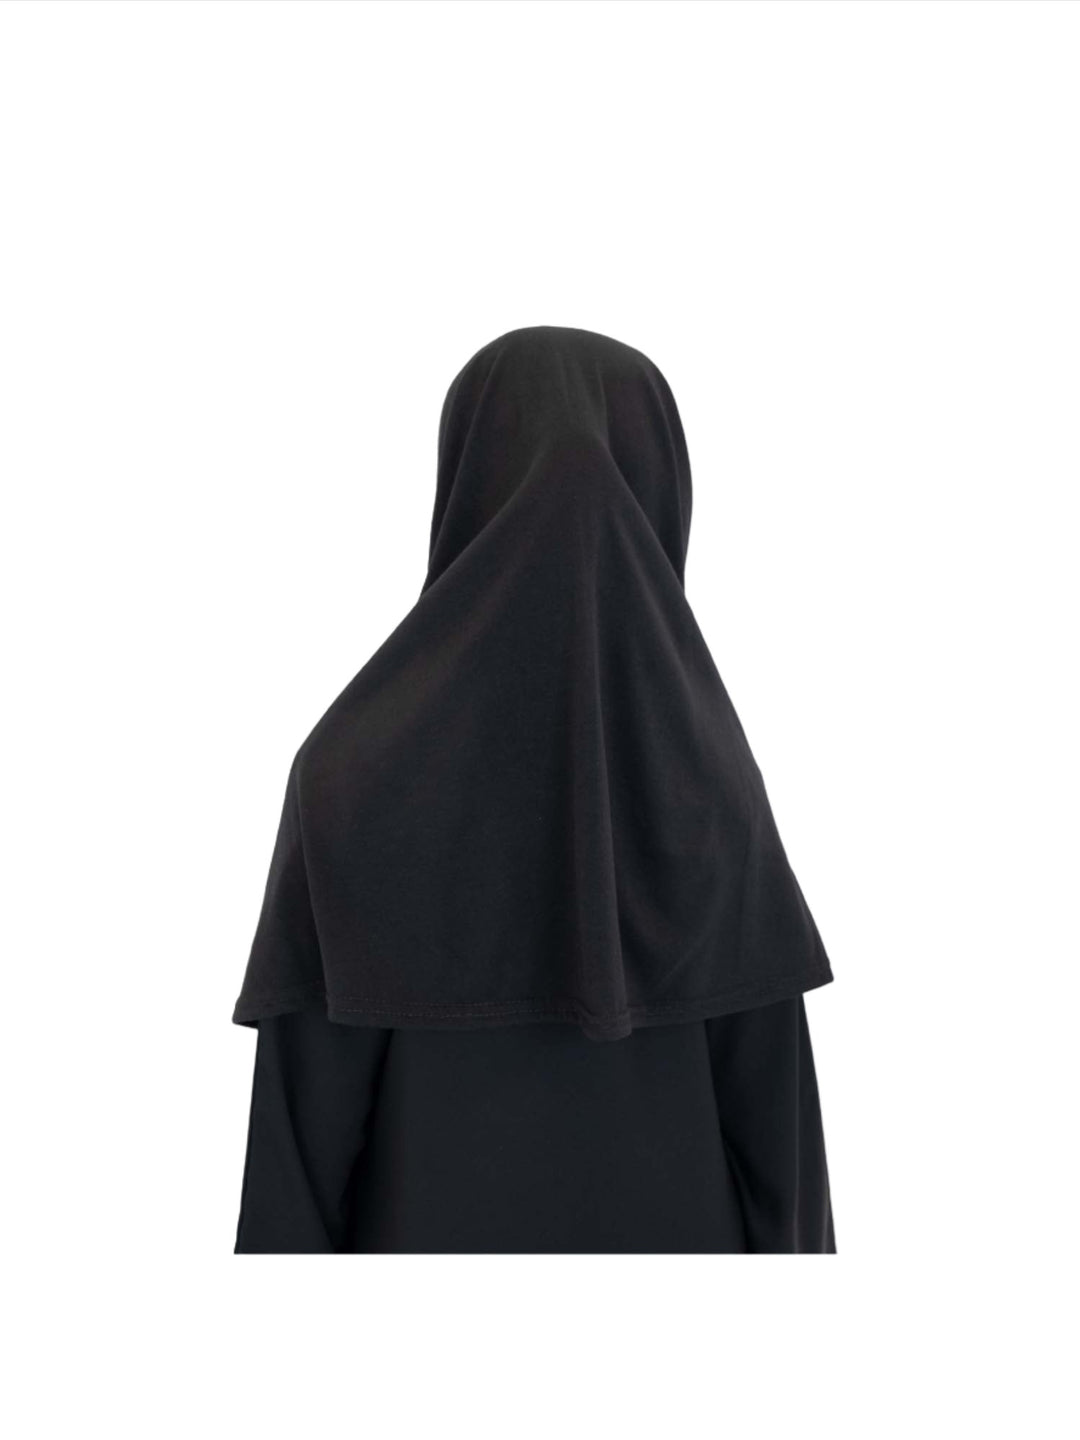 Girls Basic One Piece Hijab - Islamic Impressions